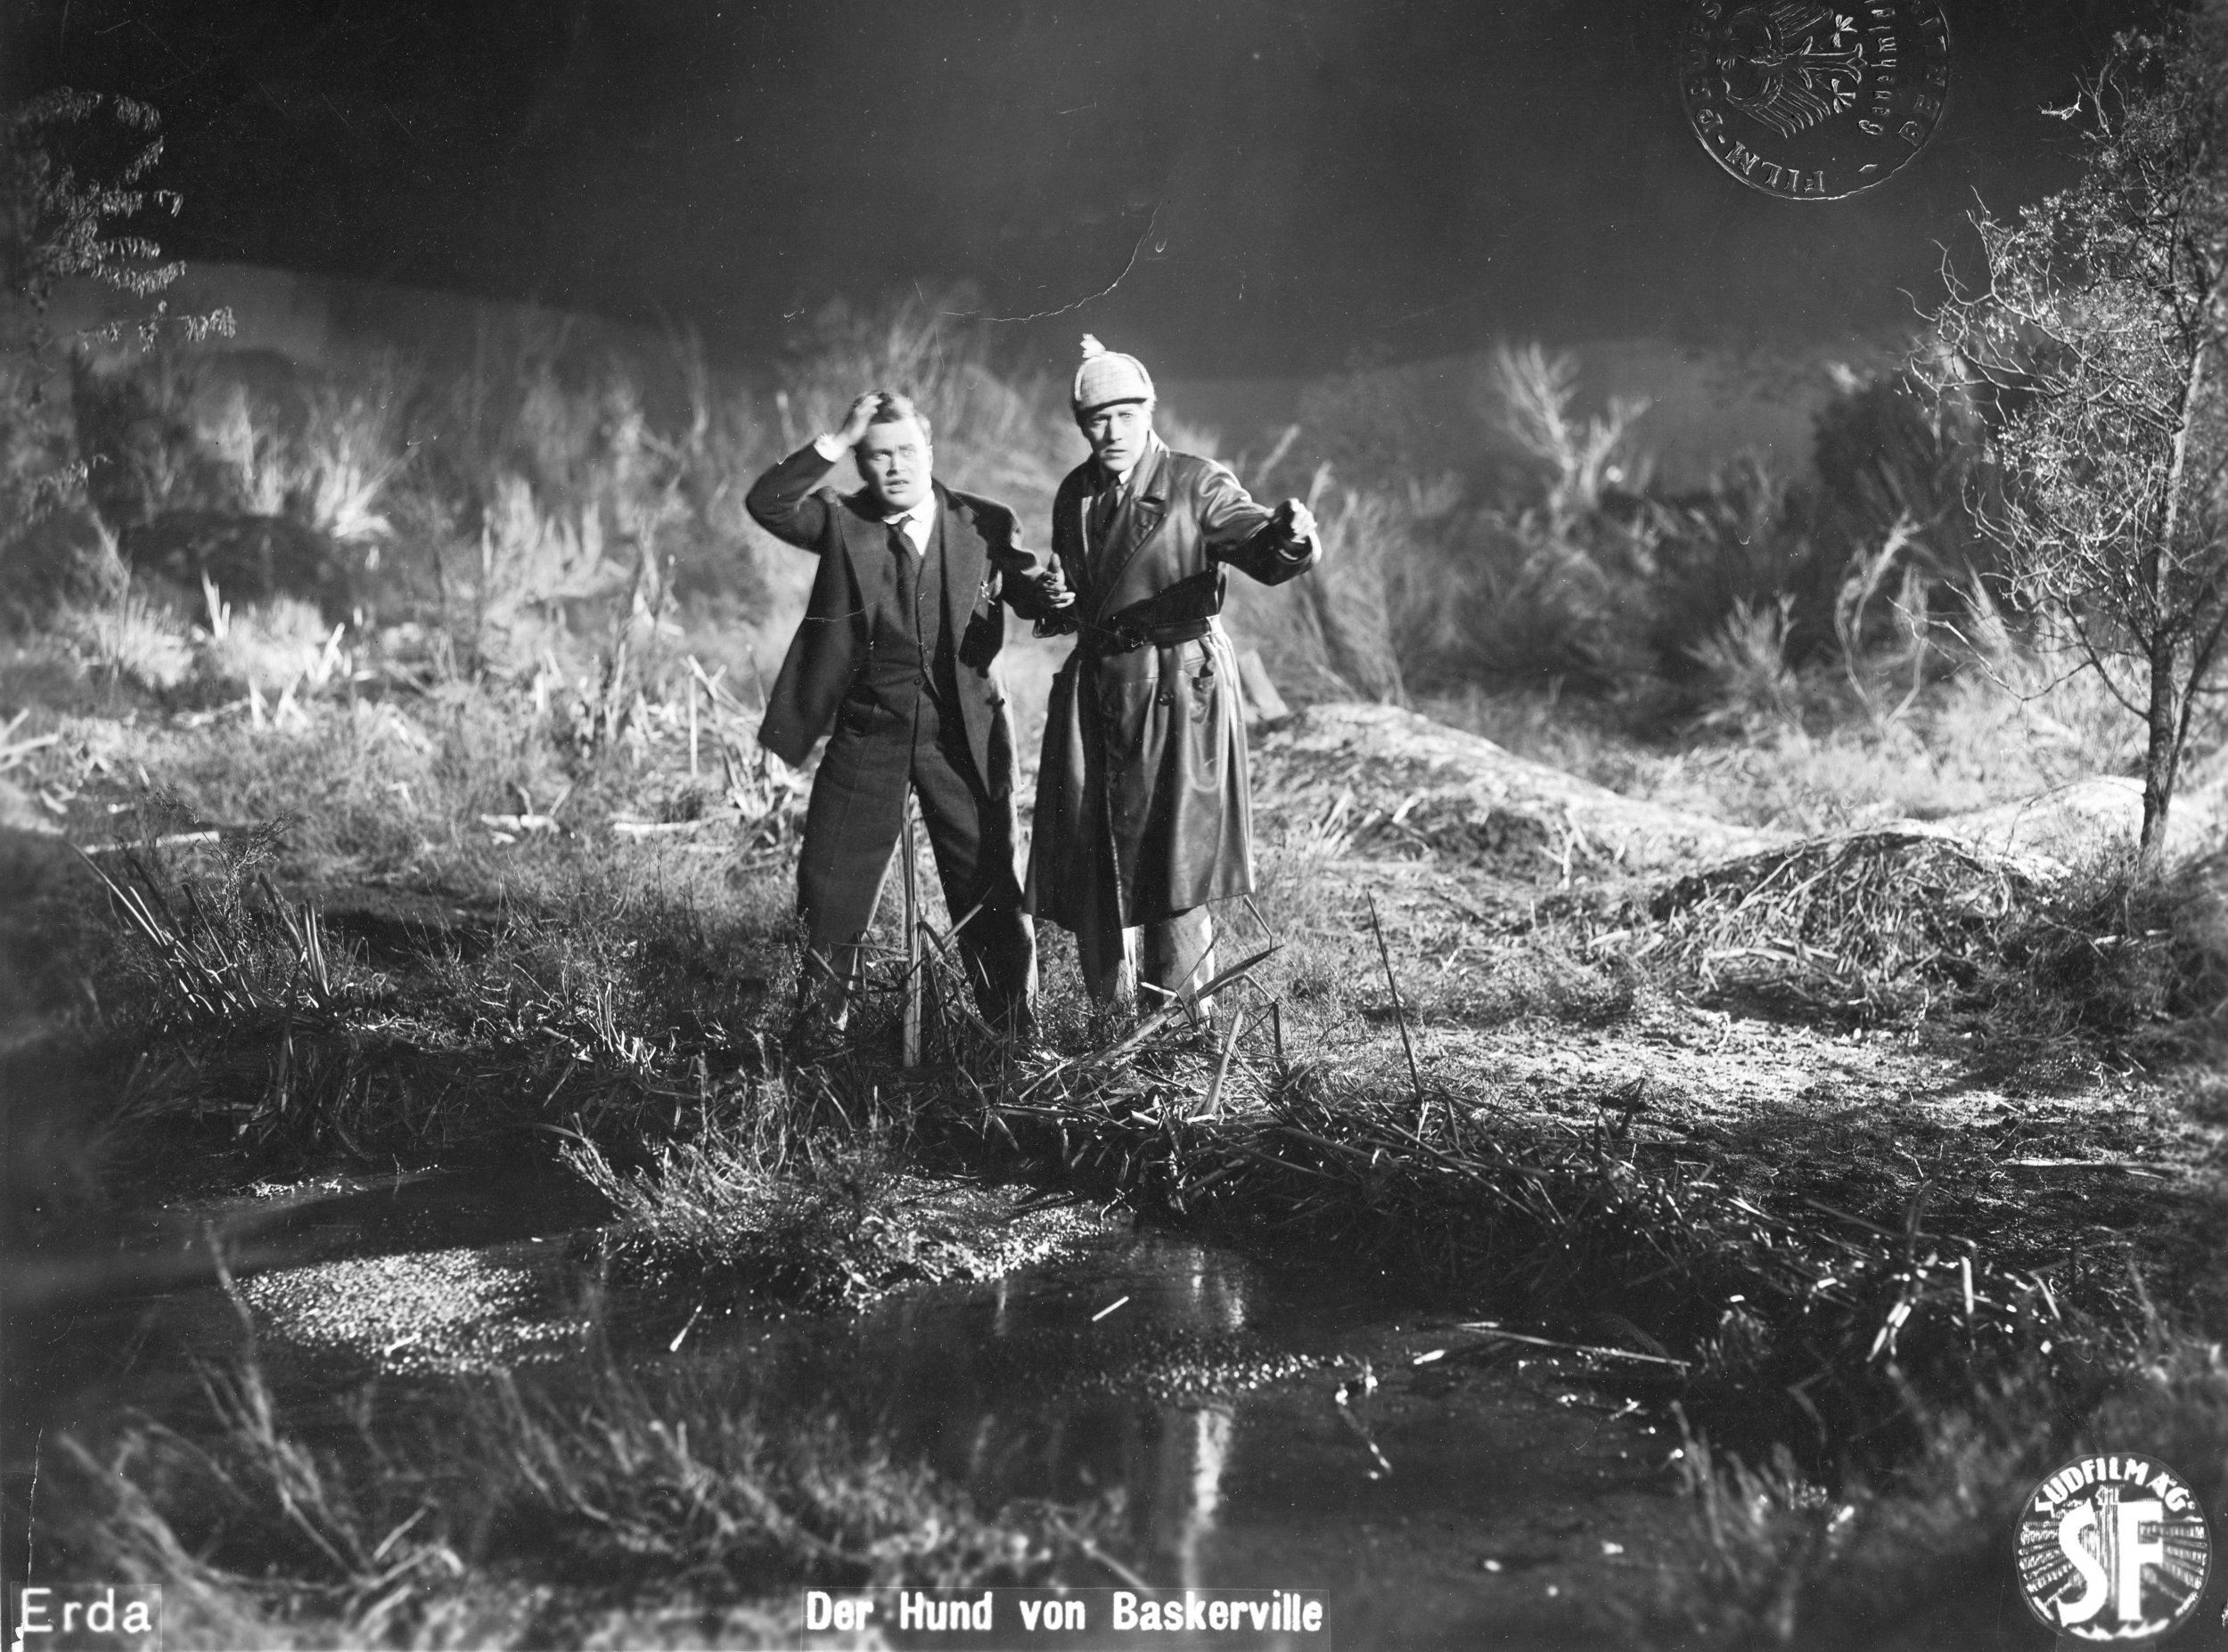 dæmning Kemiker nevø THE HOUND OF THE BASKERVILLES (DER HUND VON BASKERVILLE) (Germany, 1929),  Director: Richard Oswald